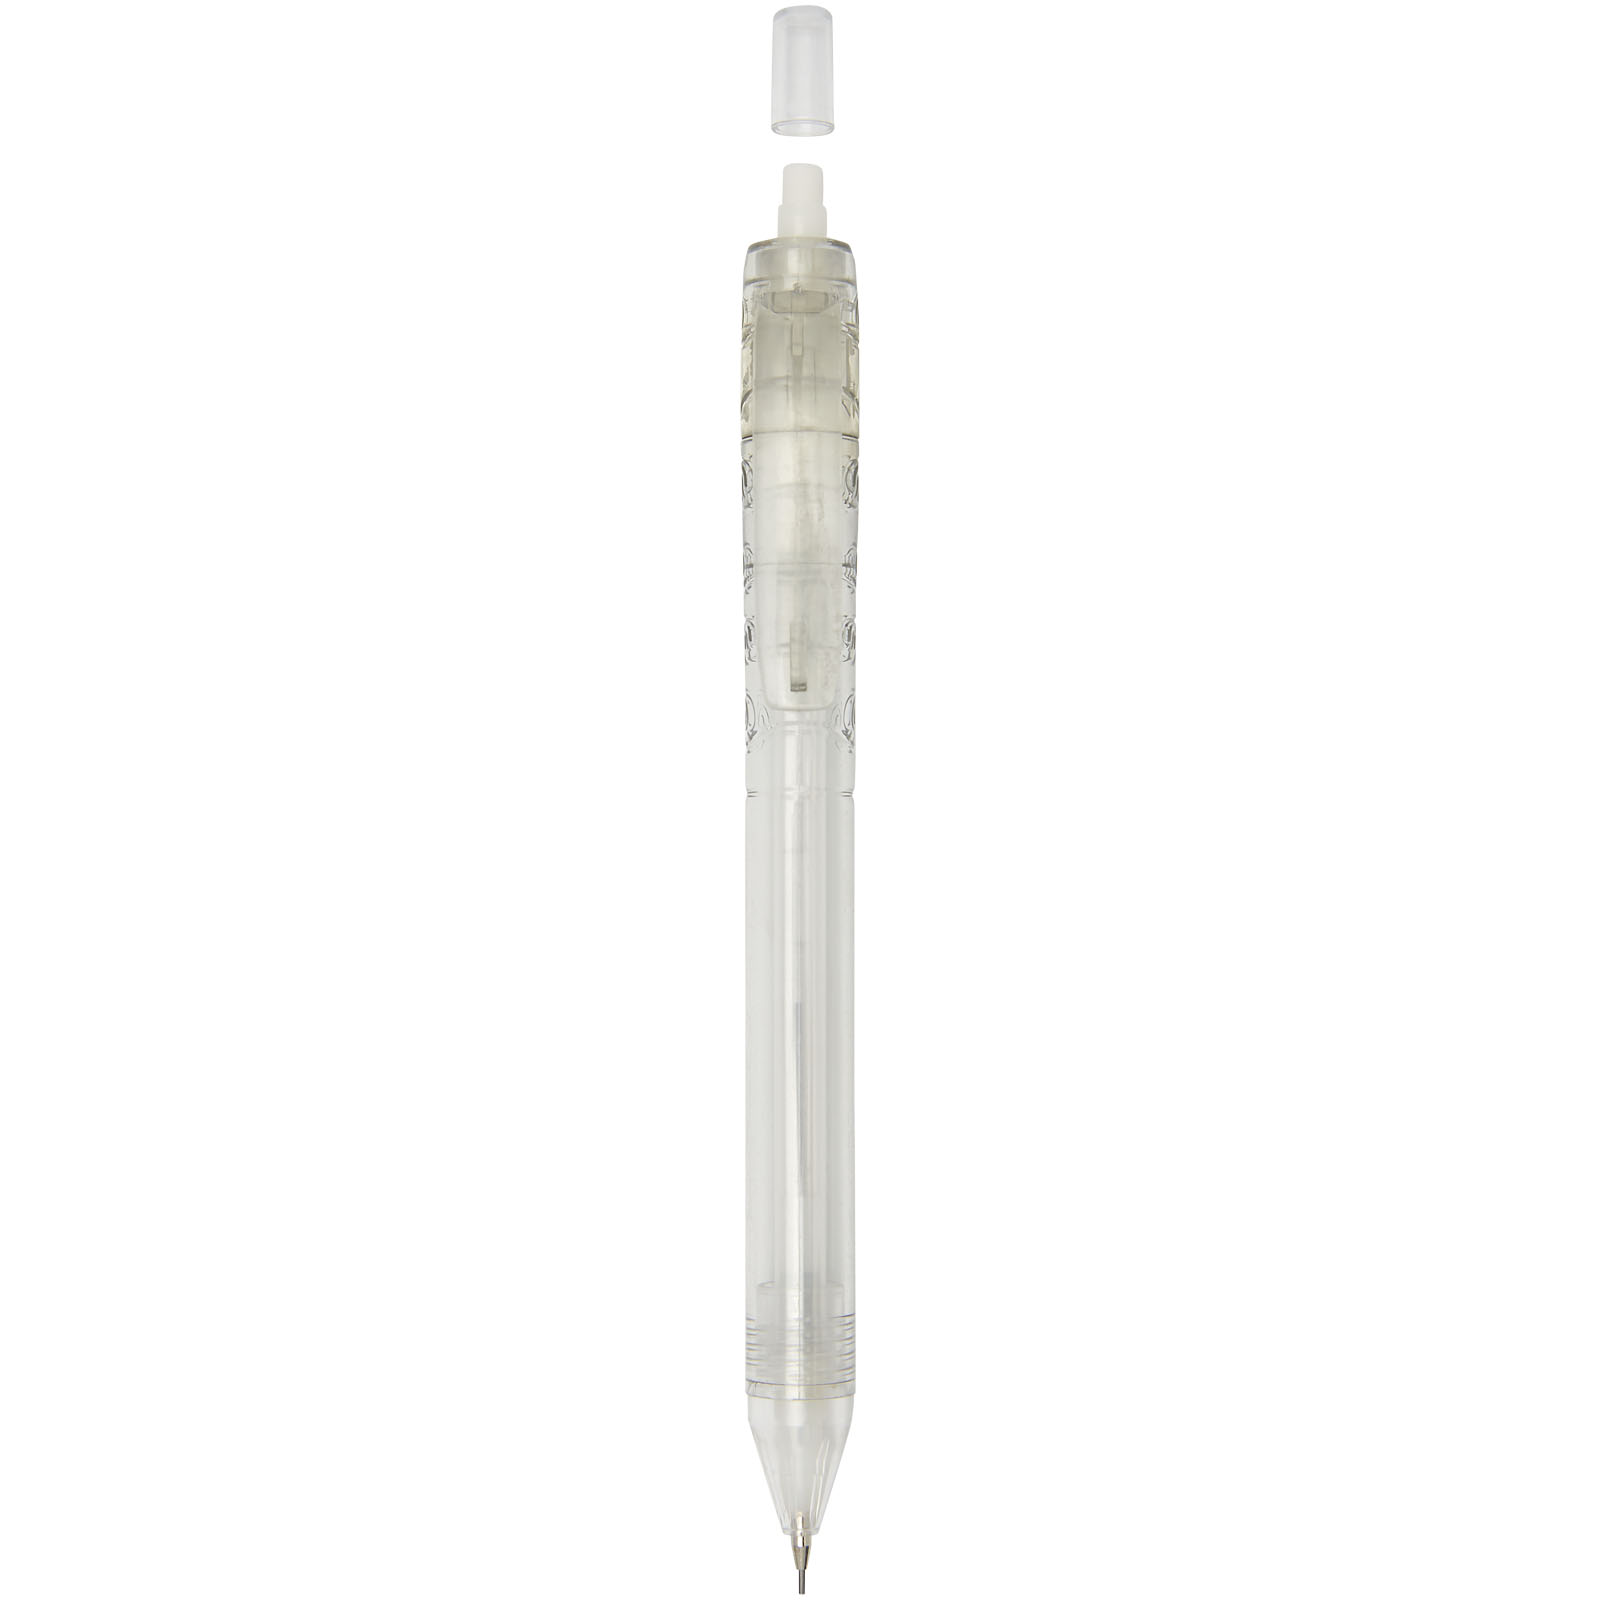 Advertising Ballpoint Pens - Alberni RPET ballpoint pen - 2